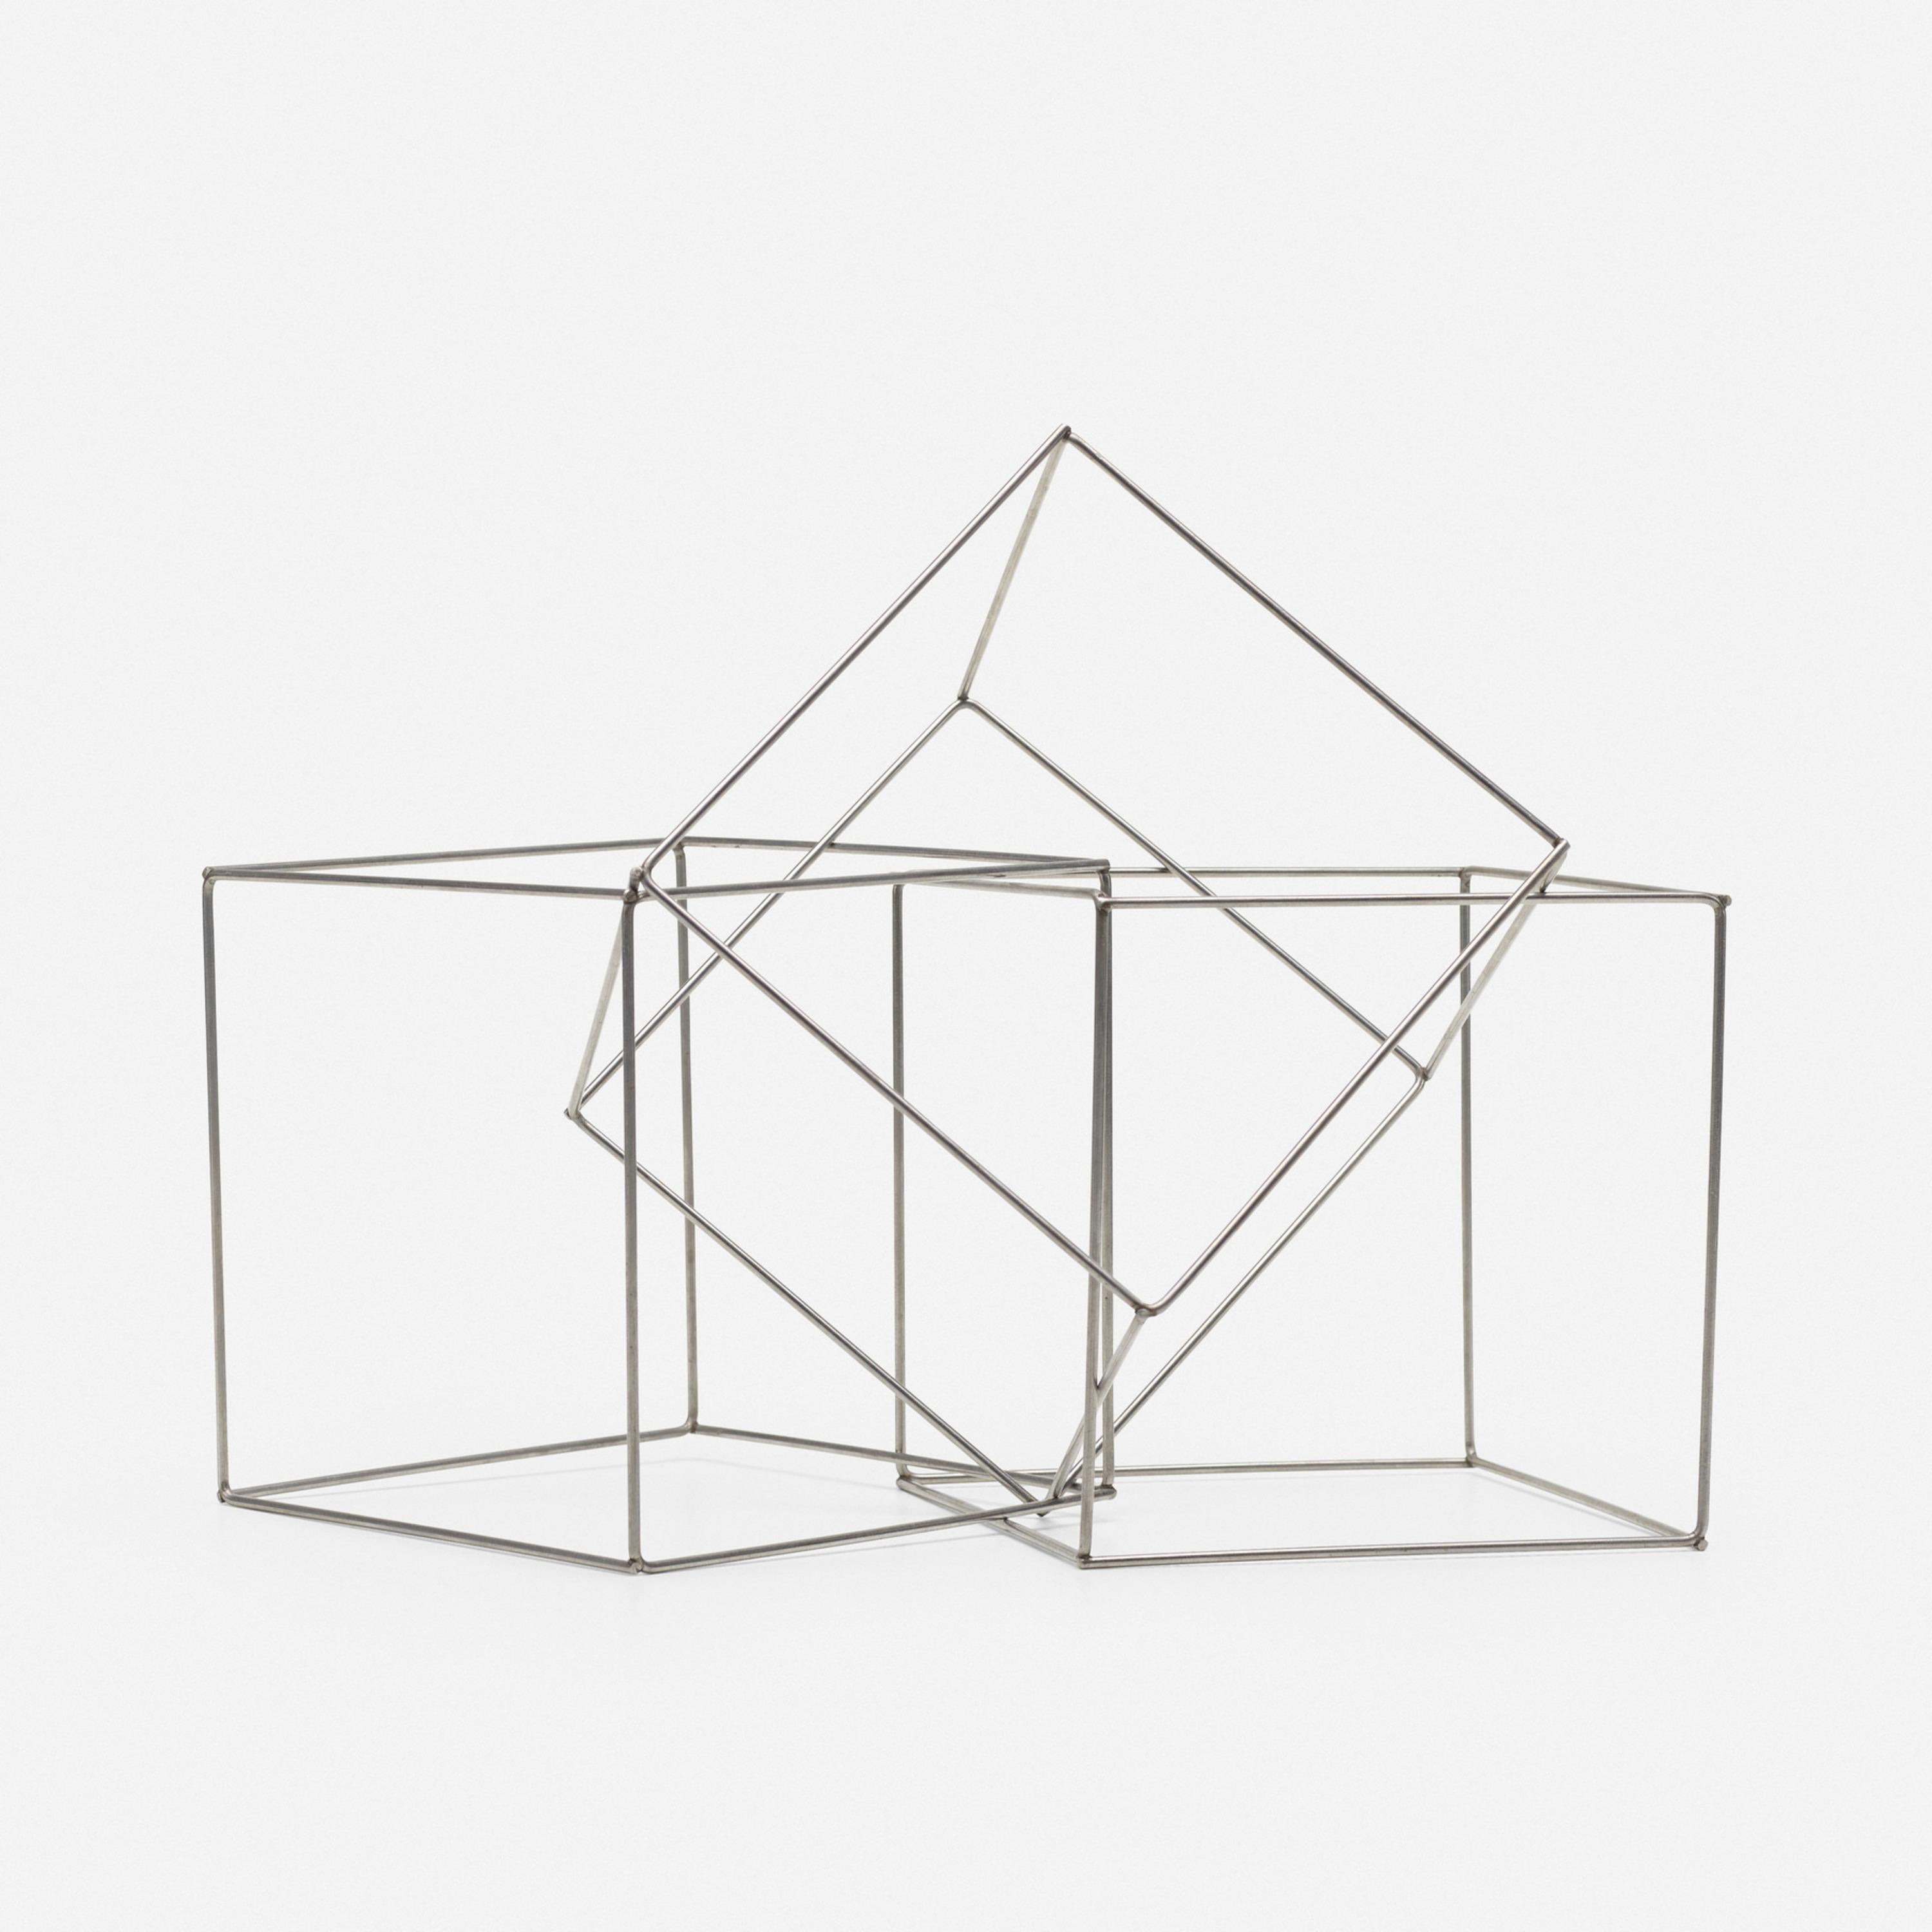 Trois cubes imbriqués - Sculpture by Francois Morellet